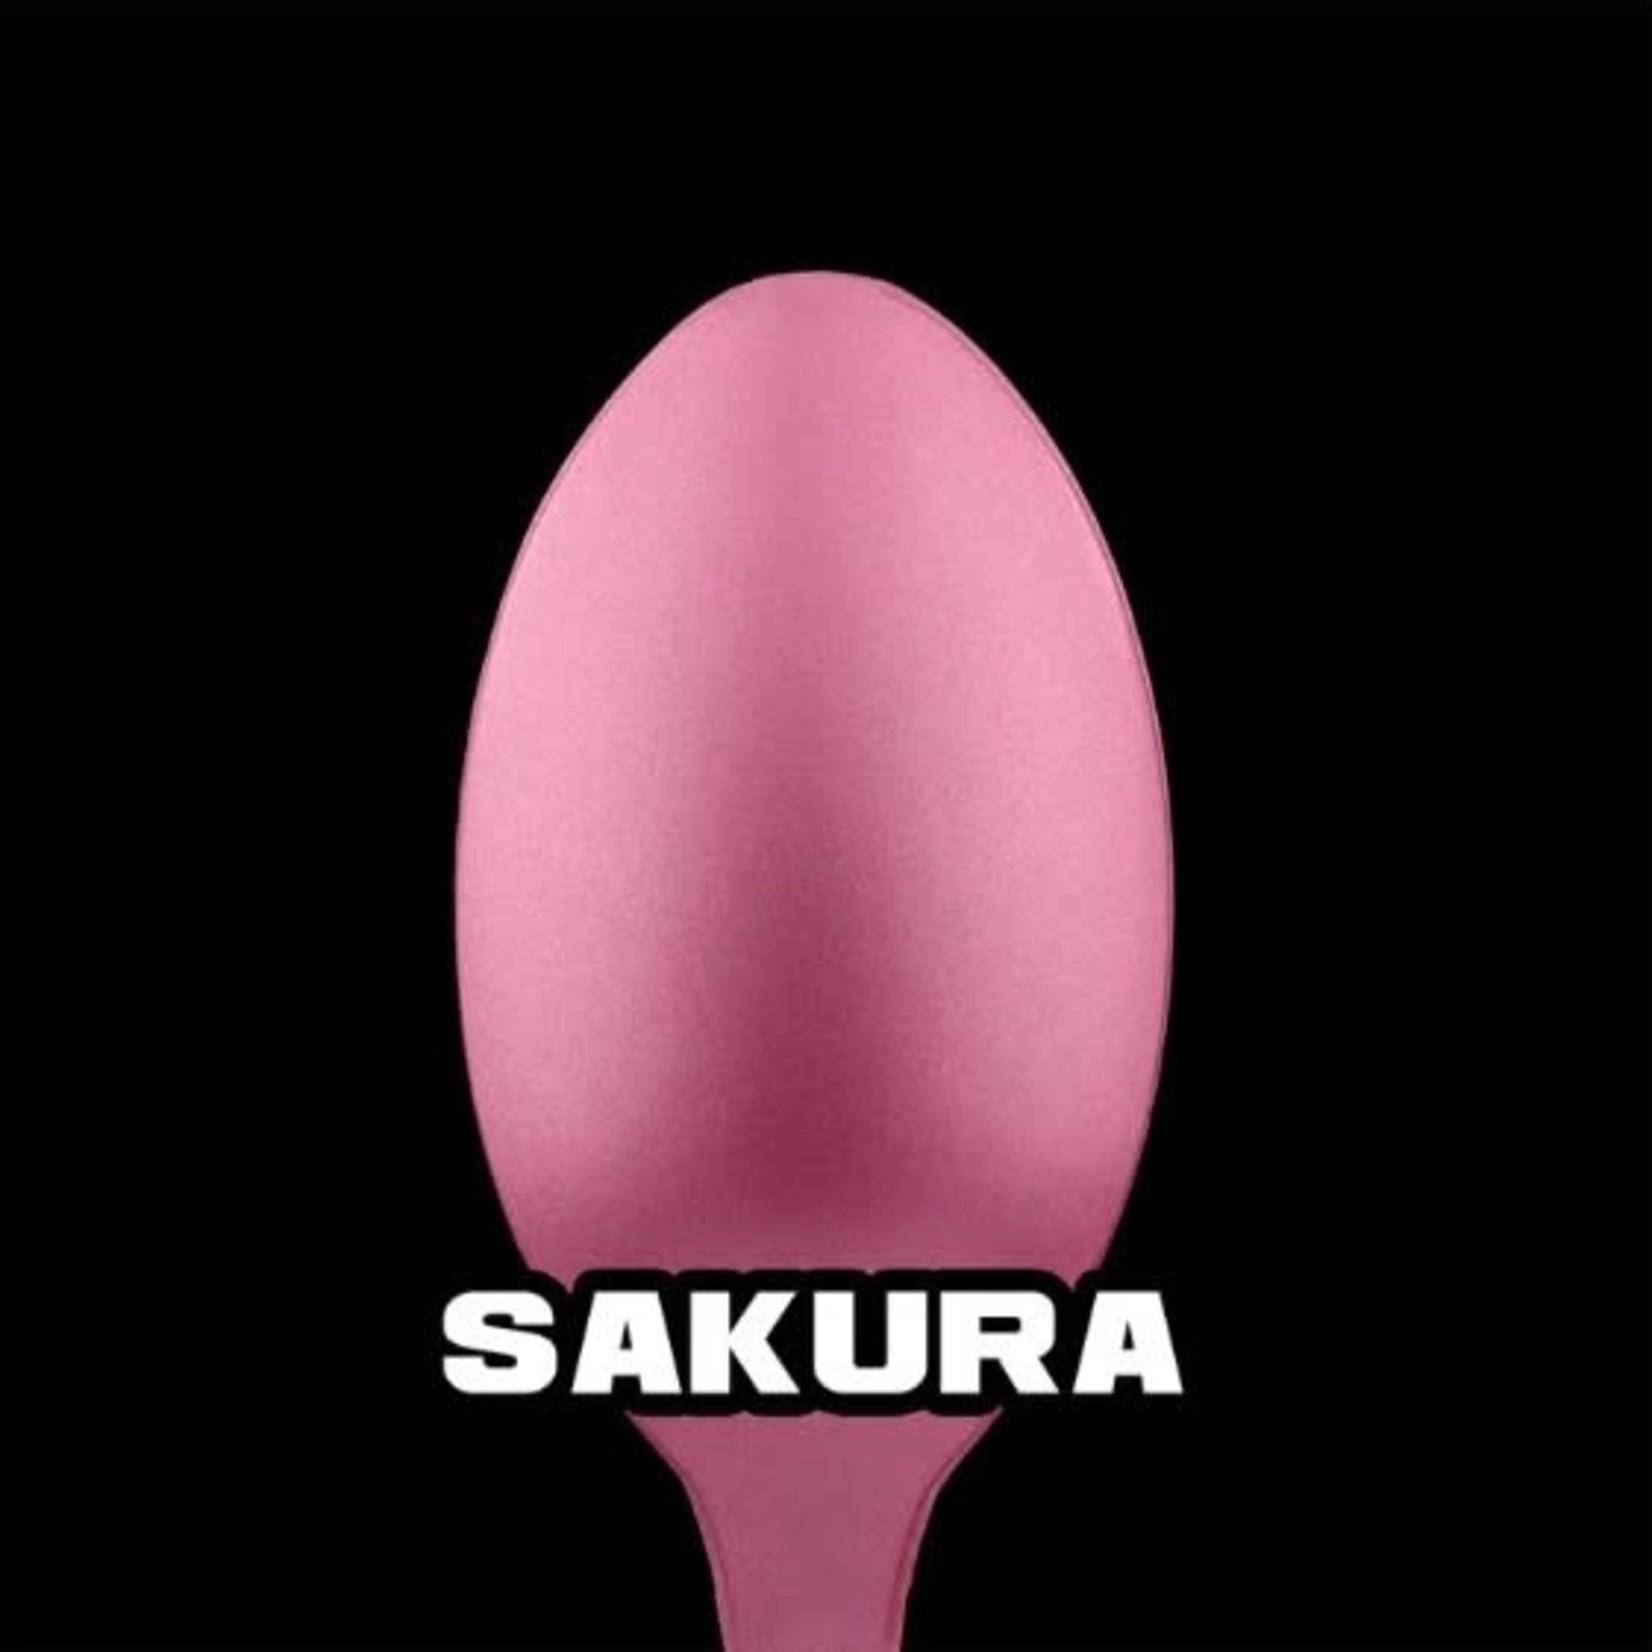 Turbo Dork Sakura Metallic Acrylic Paint